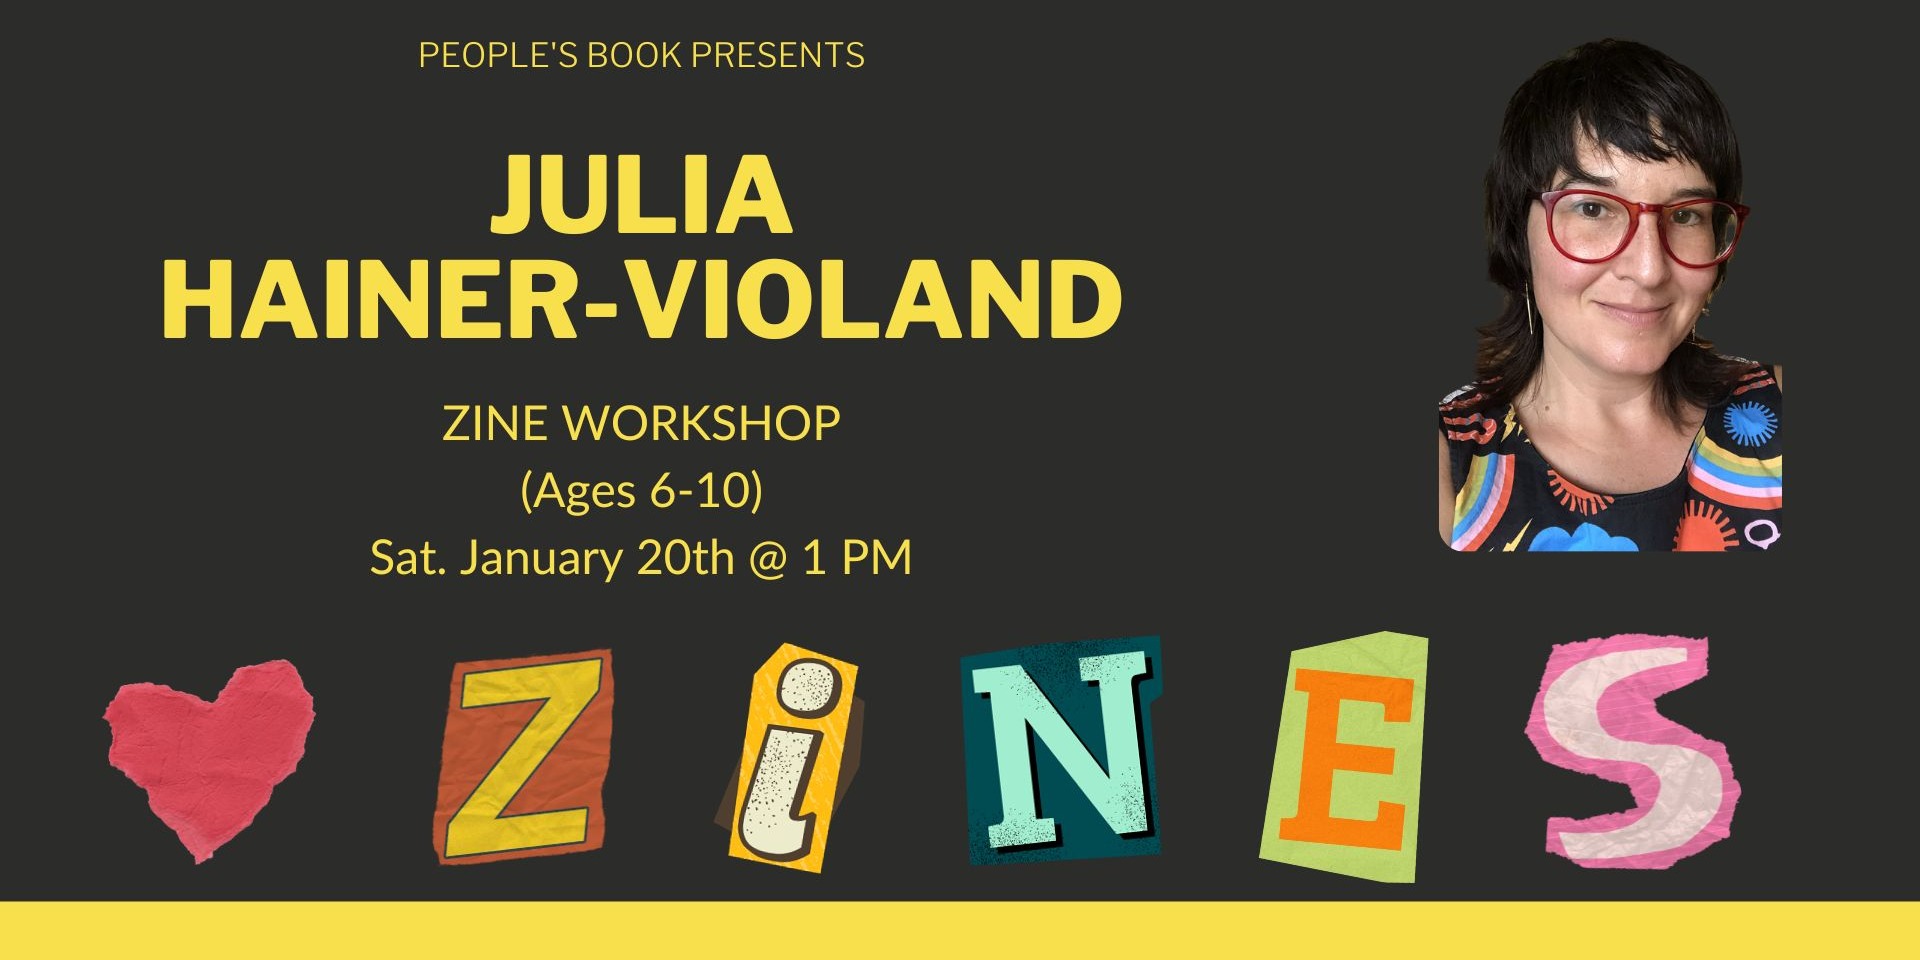 Zine Workshop with Julia Hainer-Violand